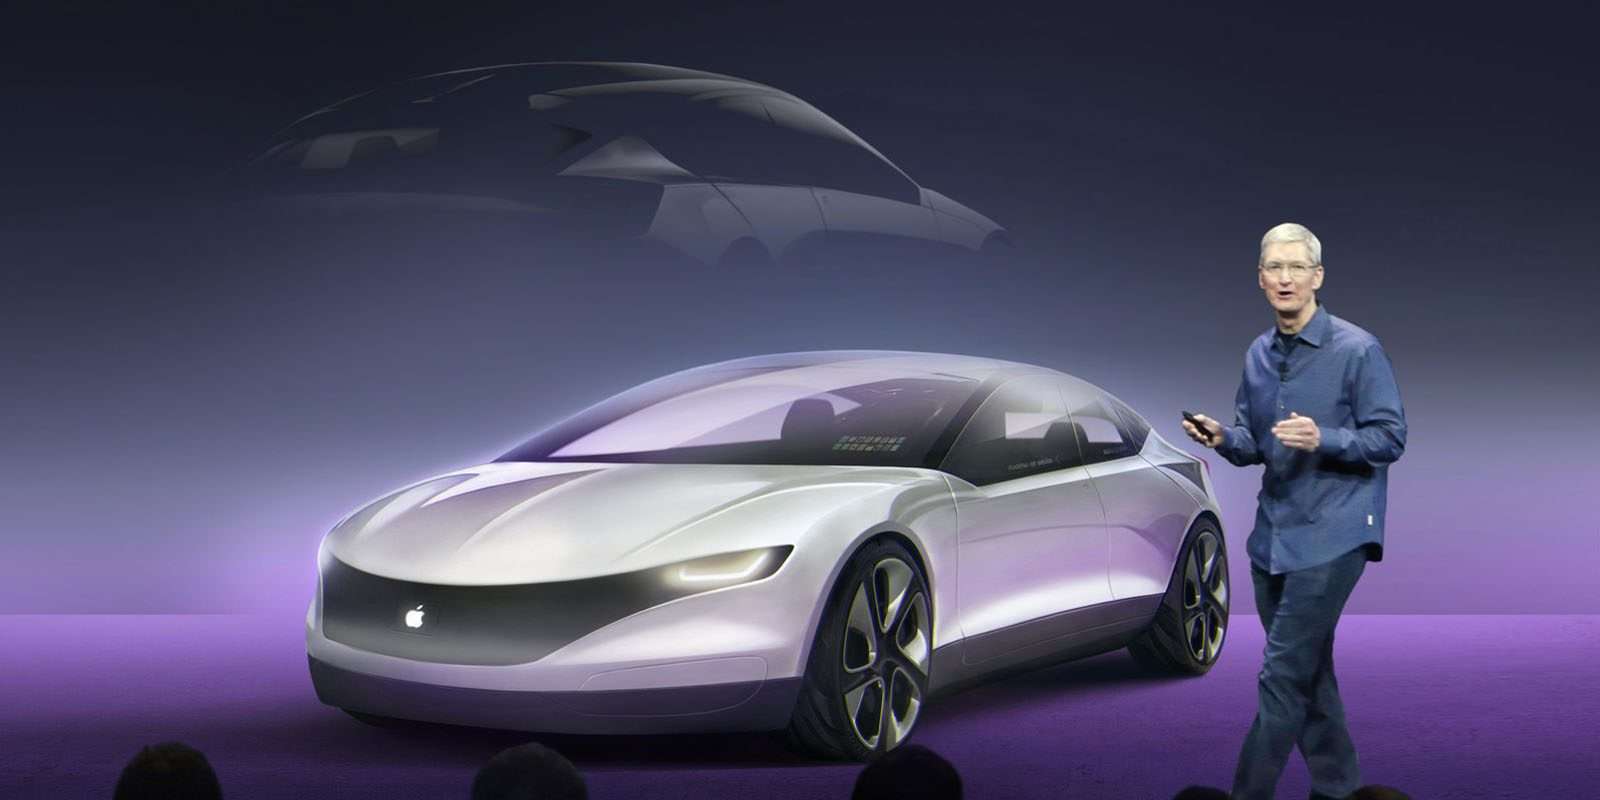 ह्यूंडाई या किआ मोटर्स के साथ ऐपल डिजाइन करेगी अपनी 'ड्राइवरलैस' कार